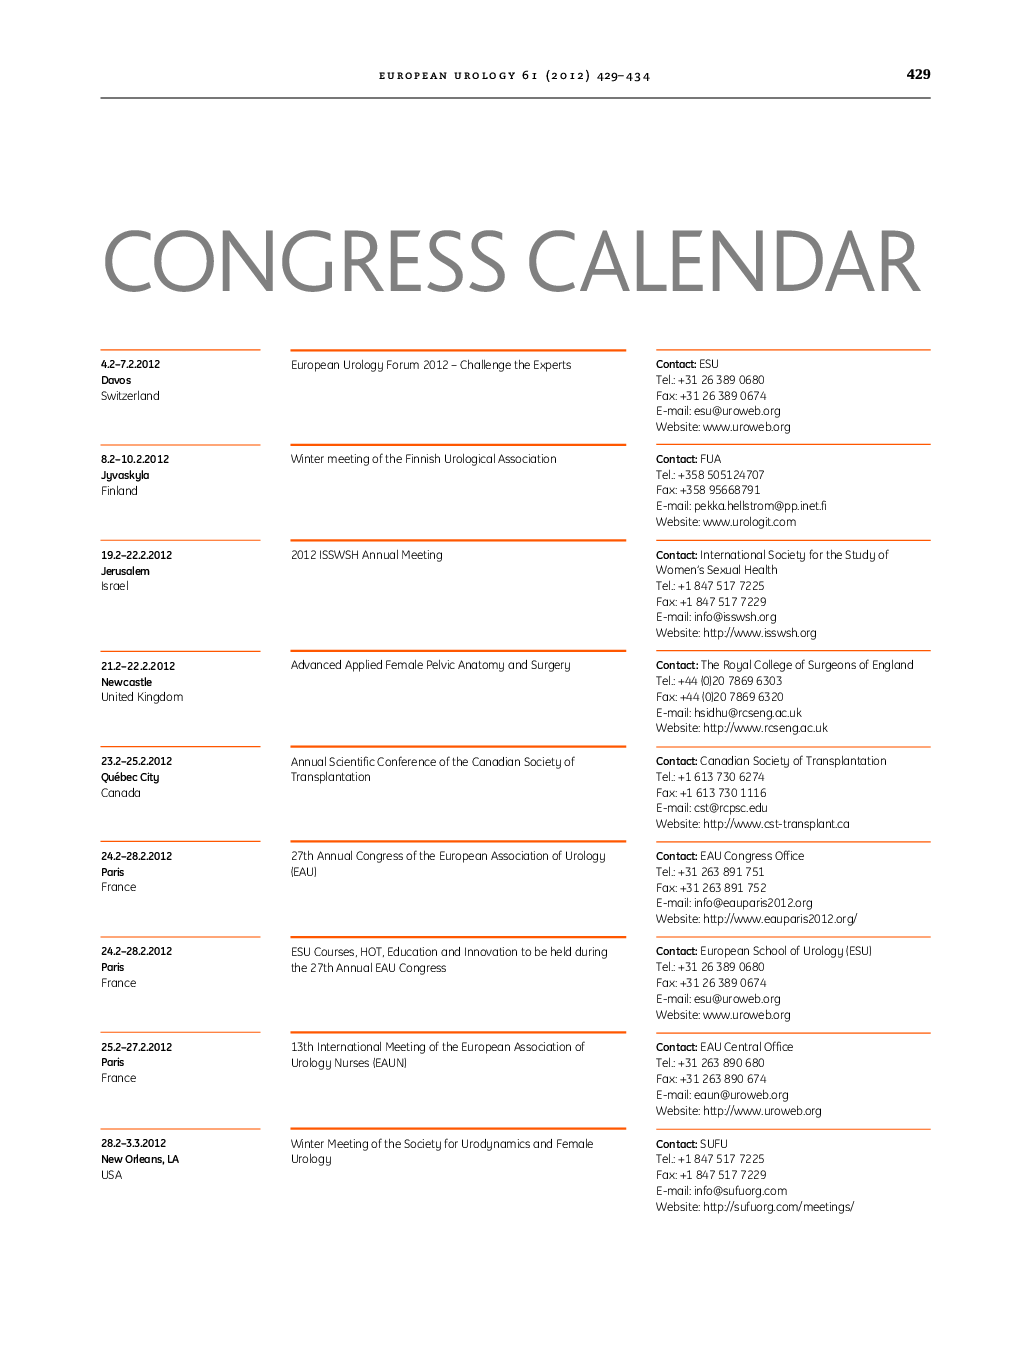 Congress Calendar